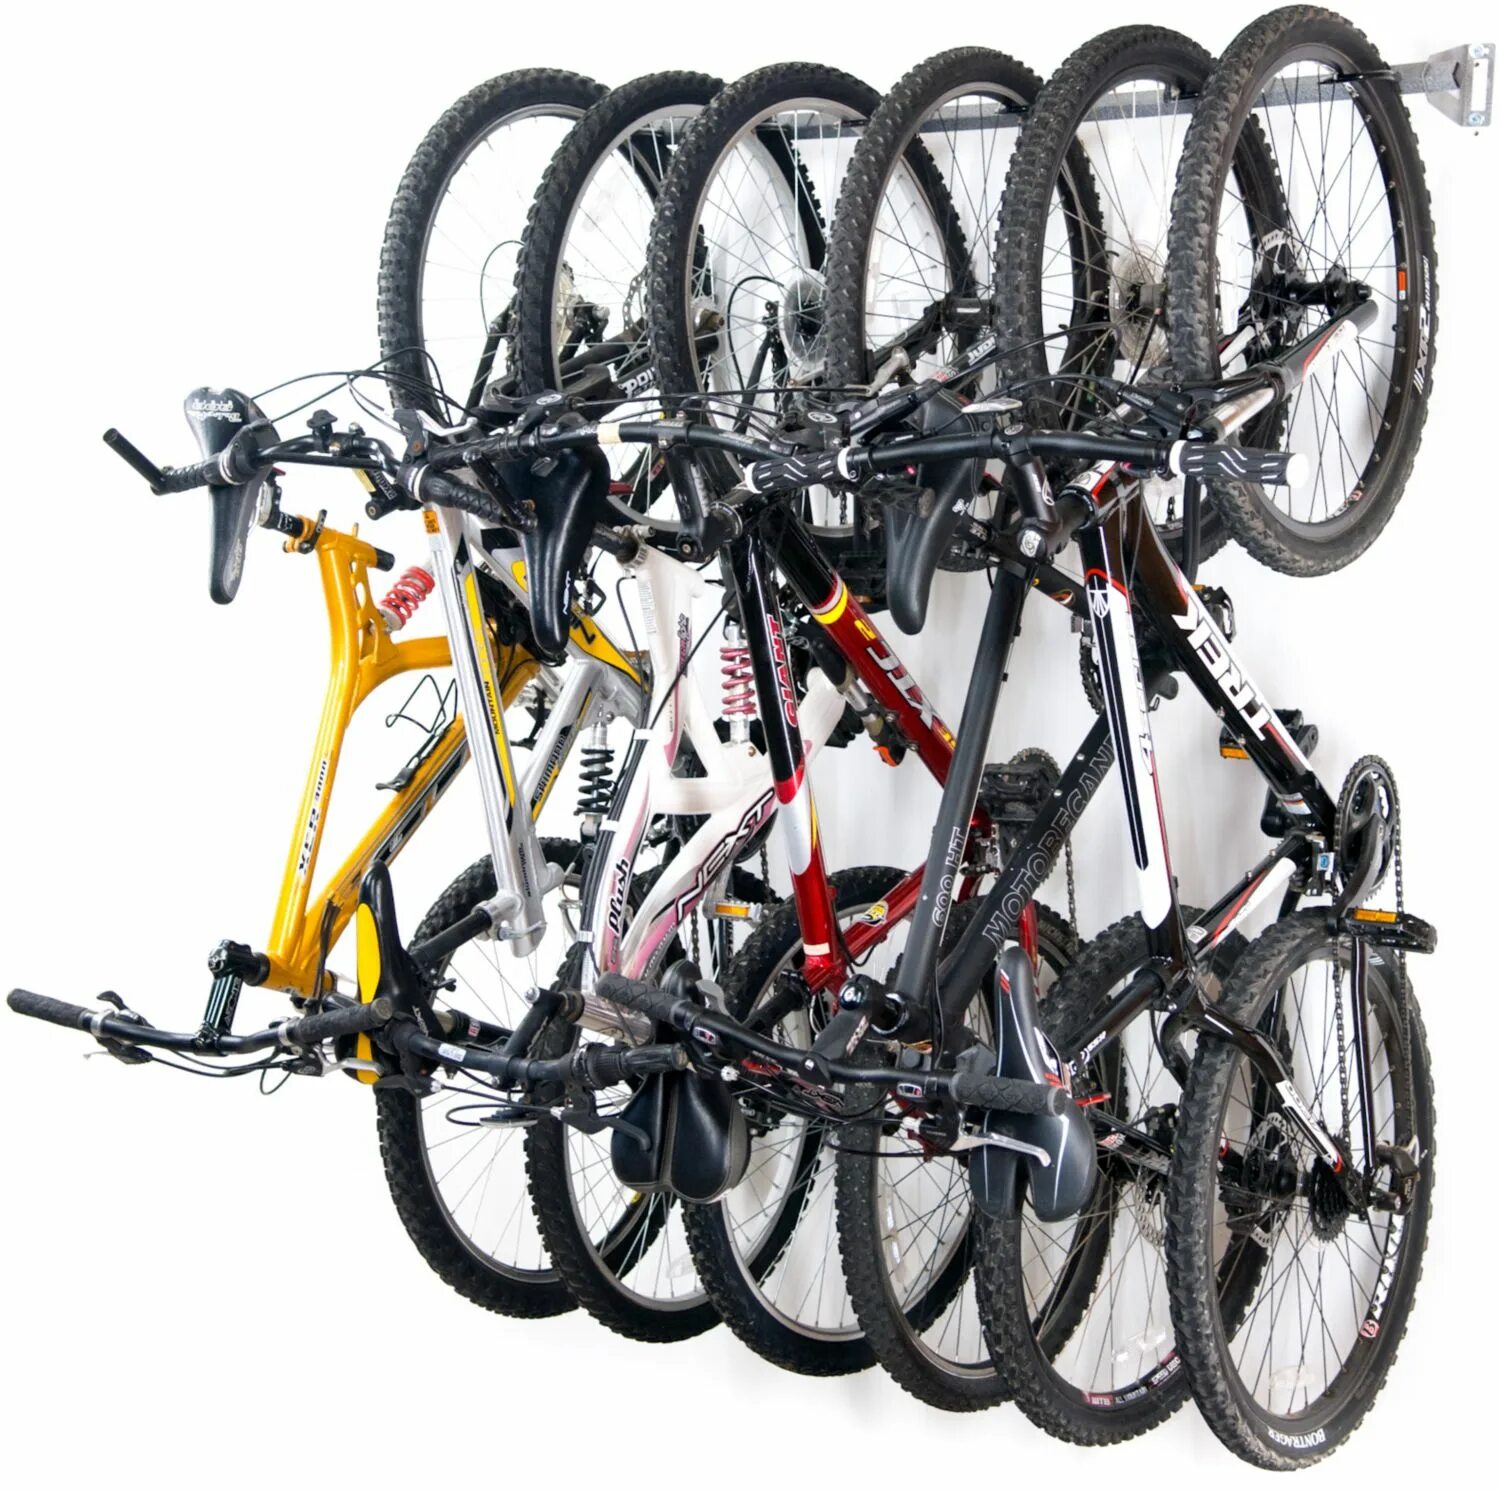 Велосипед на сайте можно купить. Стойка для хранения велосипедов. Хранение велосипедов. Стойка для велосипеда вертикальная. Стойка для вертикального хранения велосипеда.